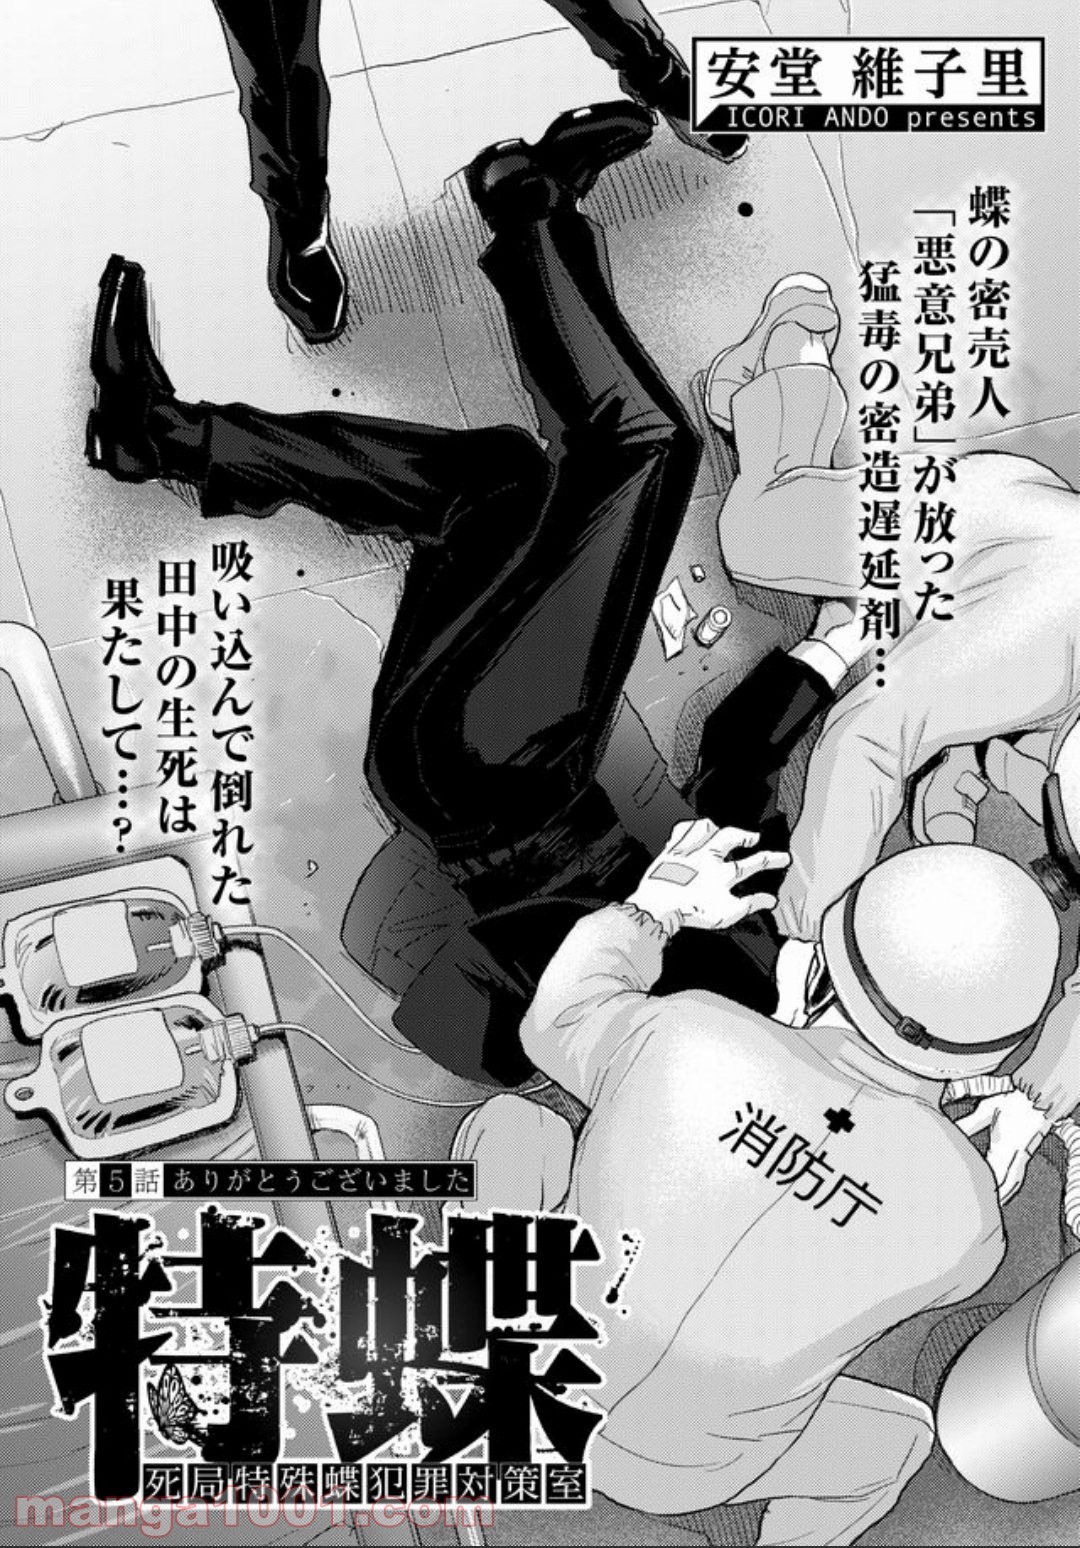 特蝶 死局特殊蝶犯罪対策室 - Raw 【第5話】 - Manga1001.com